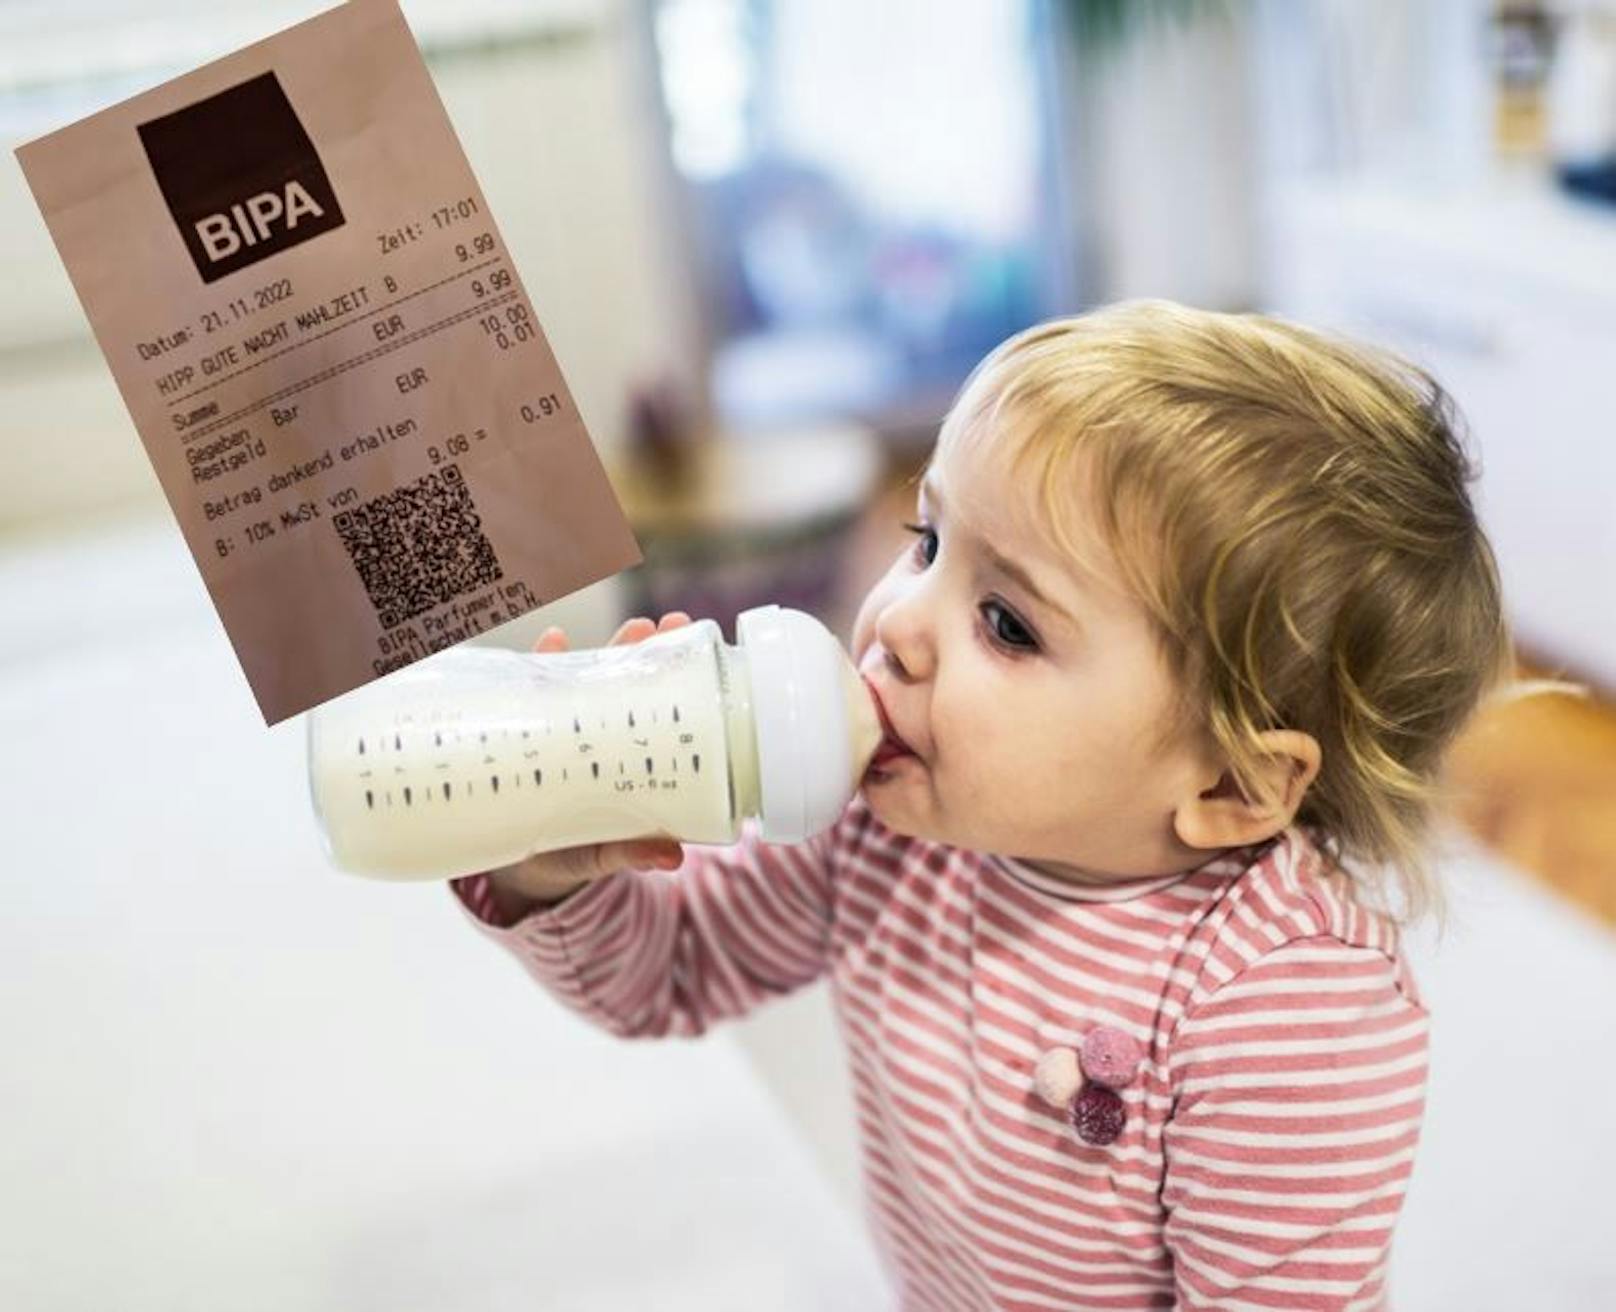 Teuerung extrem! Babynahrung kostet schon 10 Euro